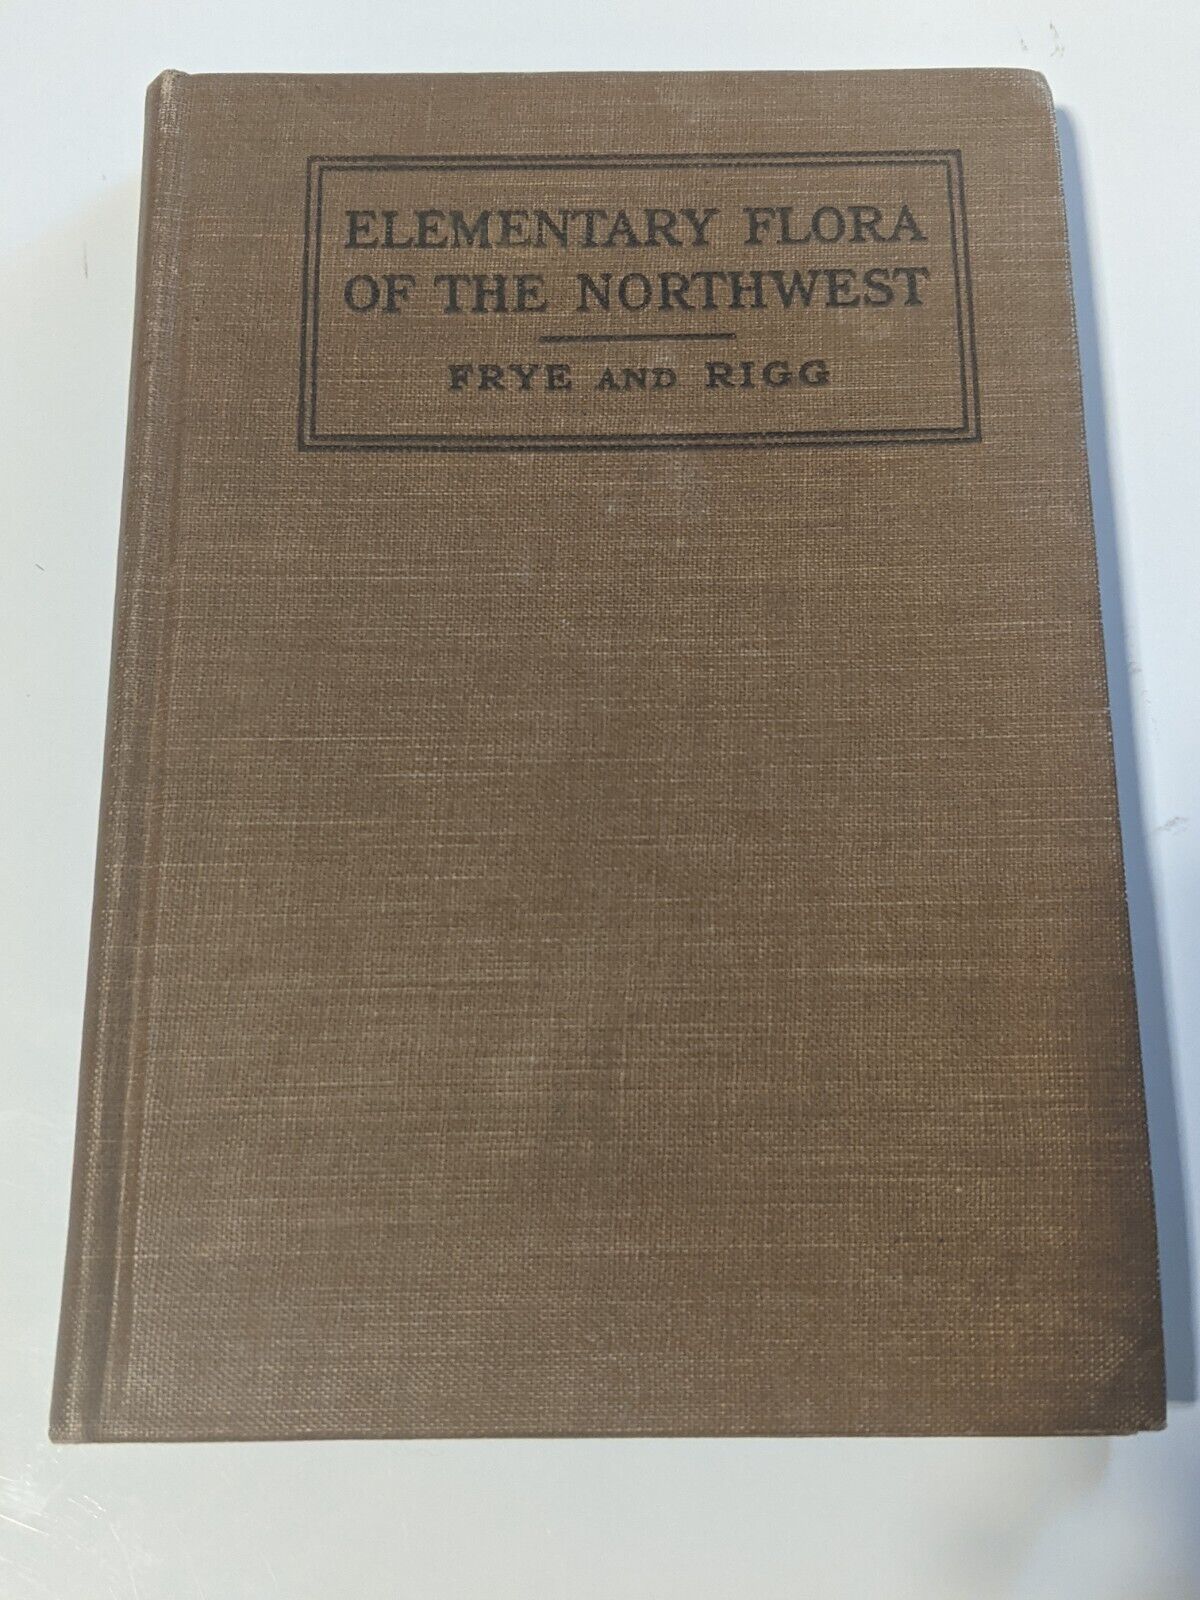 Antique 1914 Elementary Flora of the Northwest Hardcover on Botany